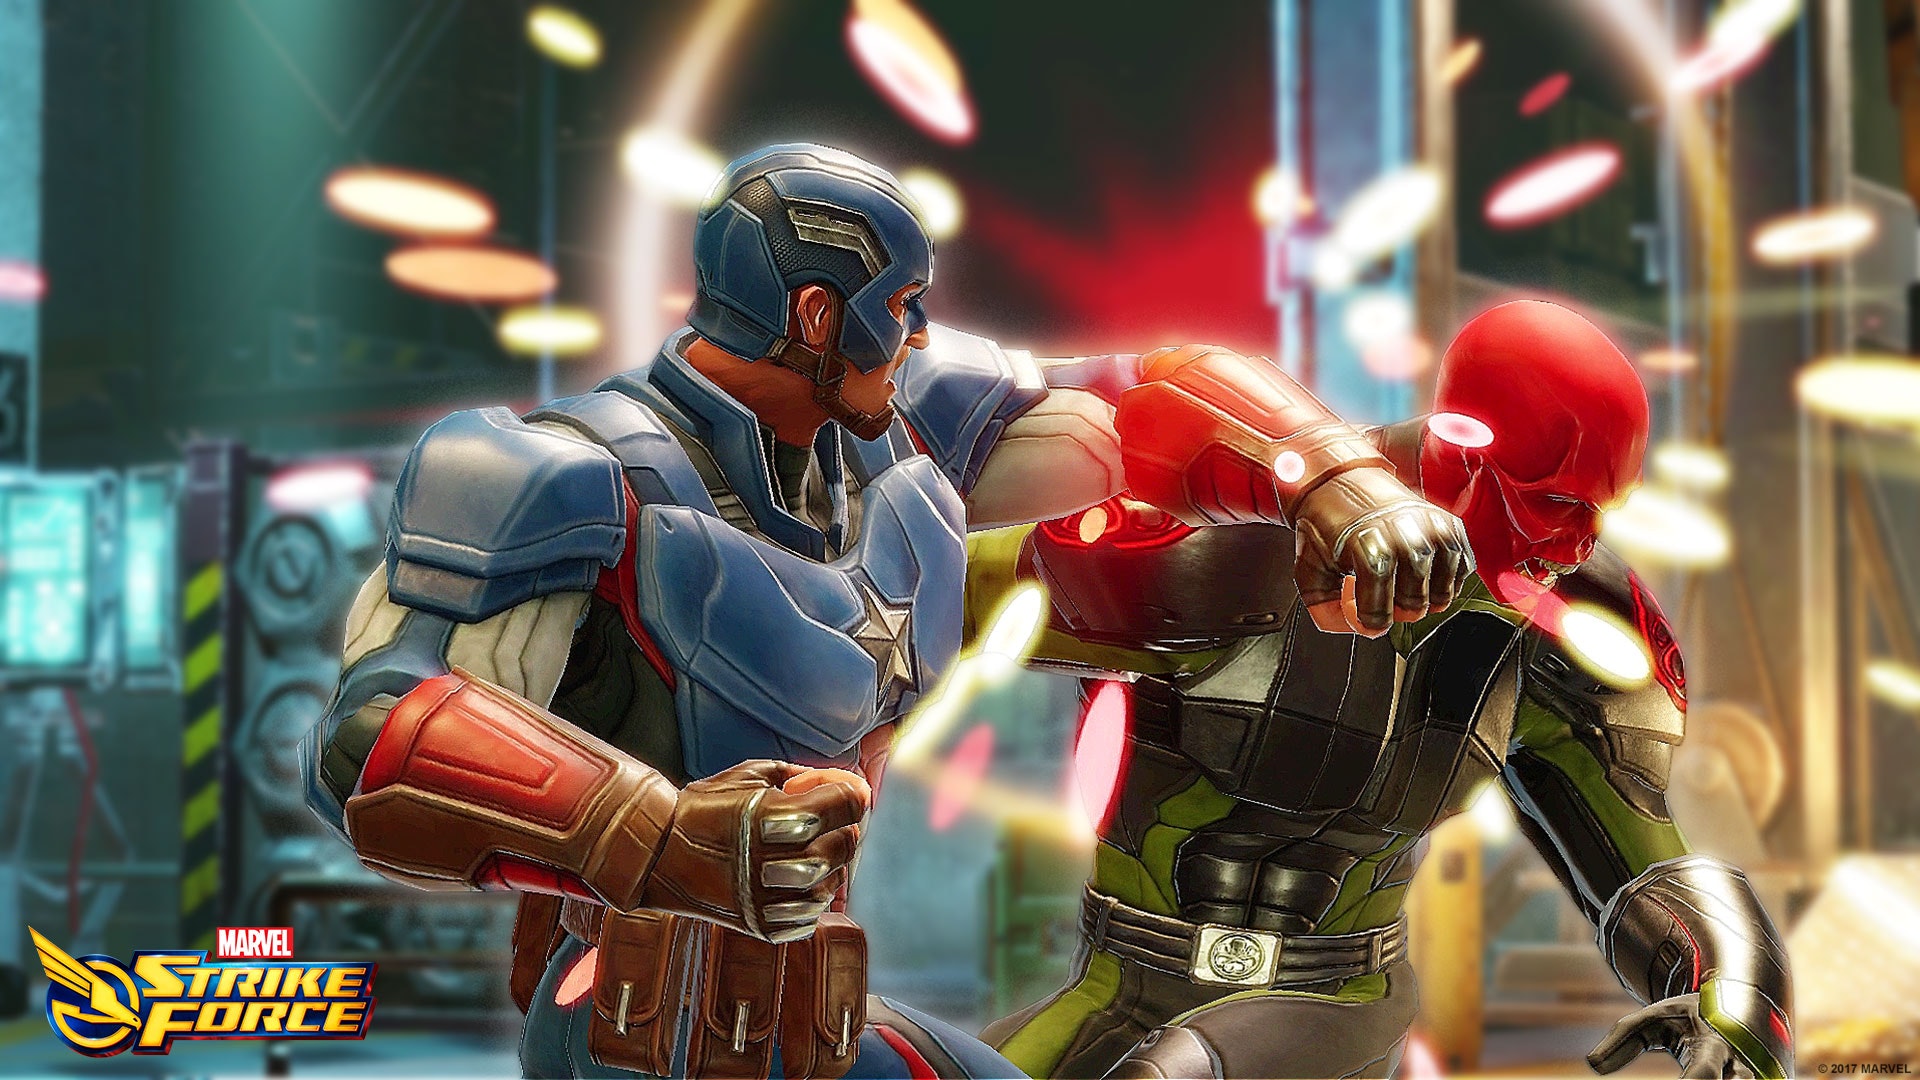 Marvel Strike Force: Blitz, please! - Nerds on Earth